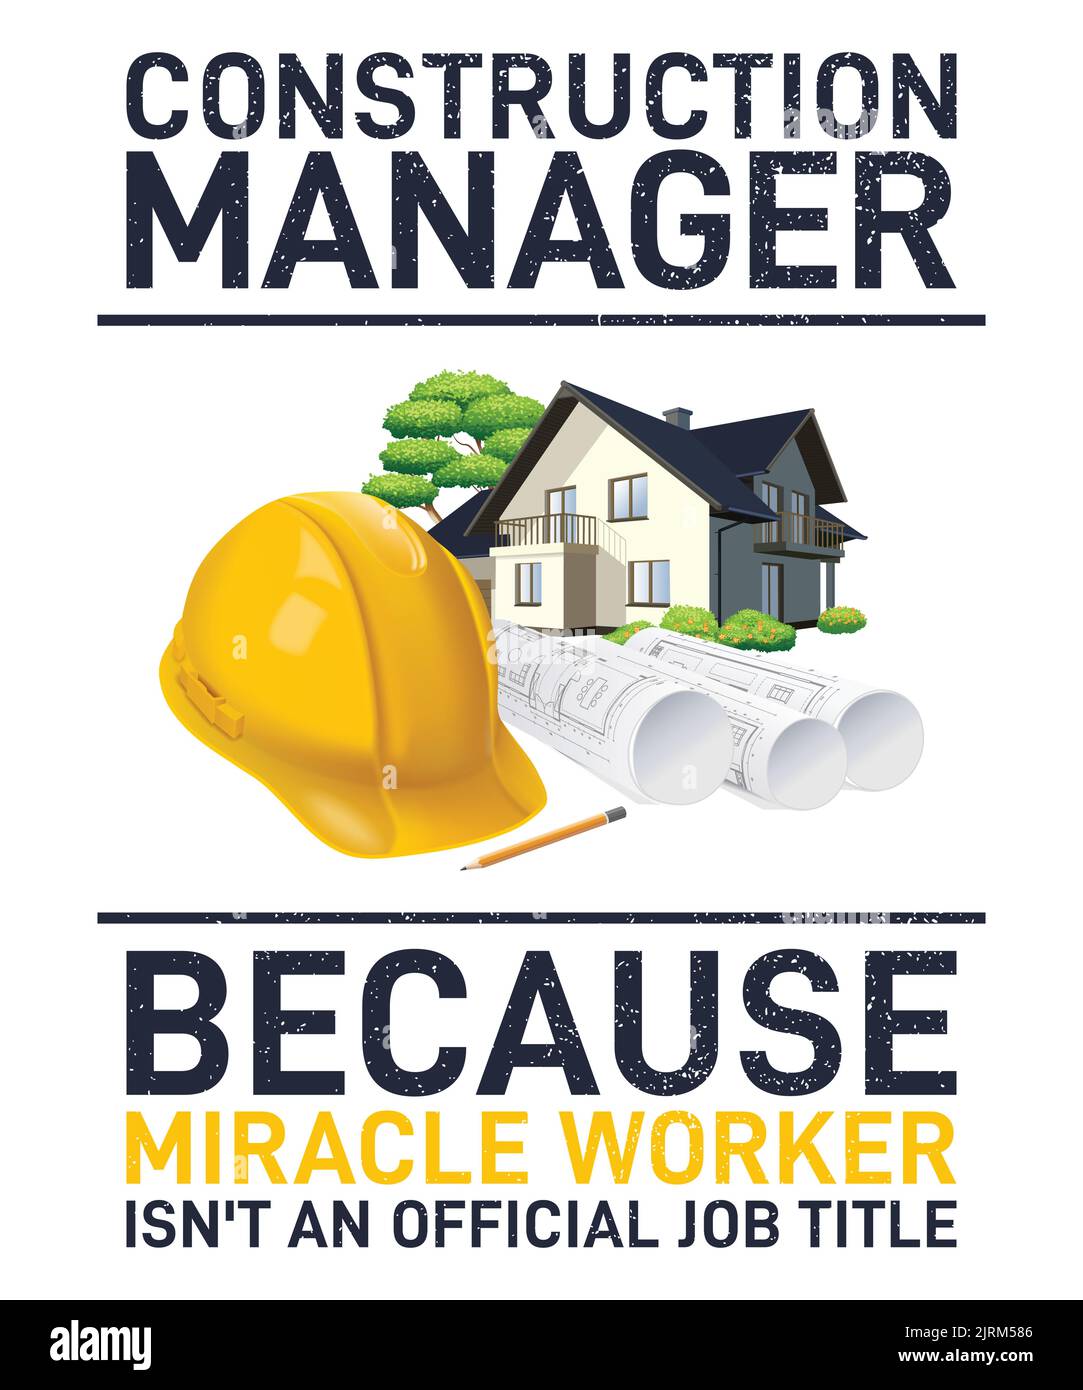 Direttore di costruzione, perché il lavoratore miracolo non è un titolo ufficiale di lavoro - stampa per t-shirt, poster, adesivi. Illustrazione Vettoriale